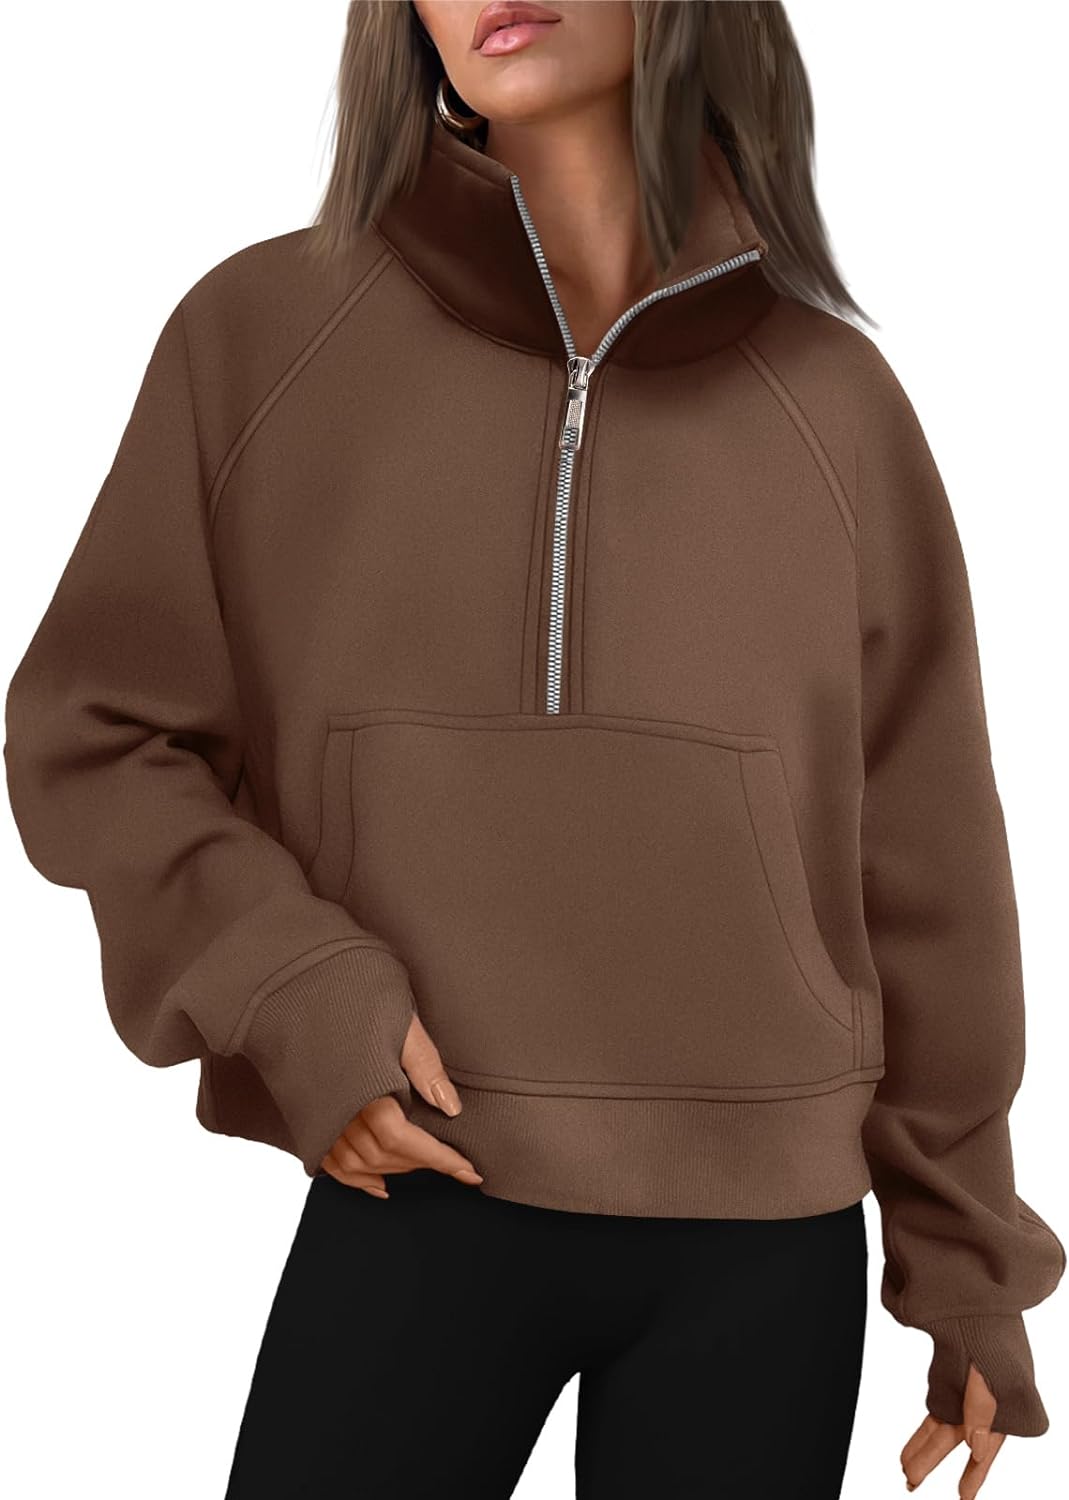 AUTOMET Womens Sweatshirts Half Zip Cropped Pullover Fleece Quarter Zipper  Hoodi